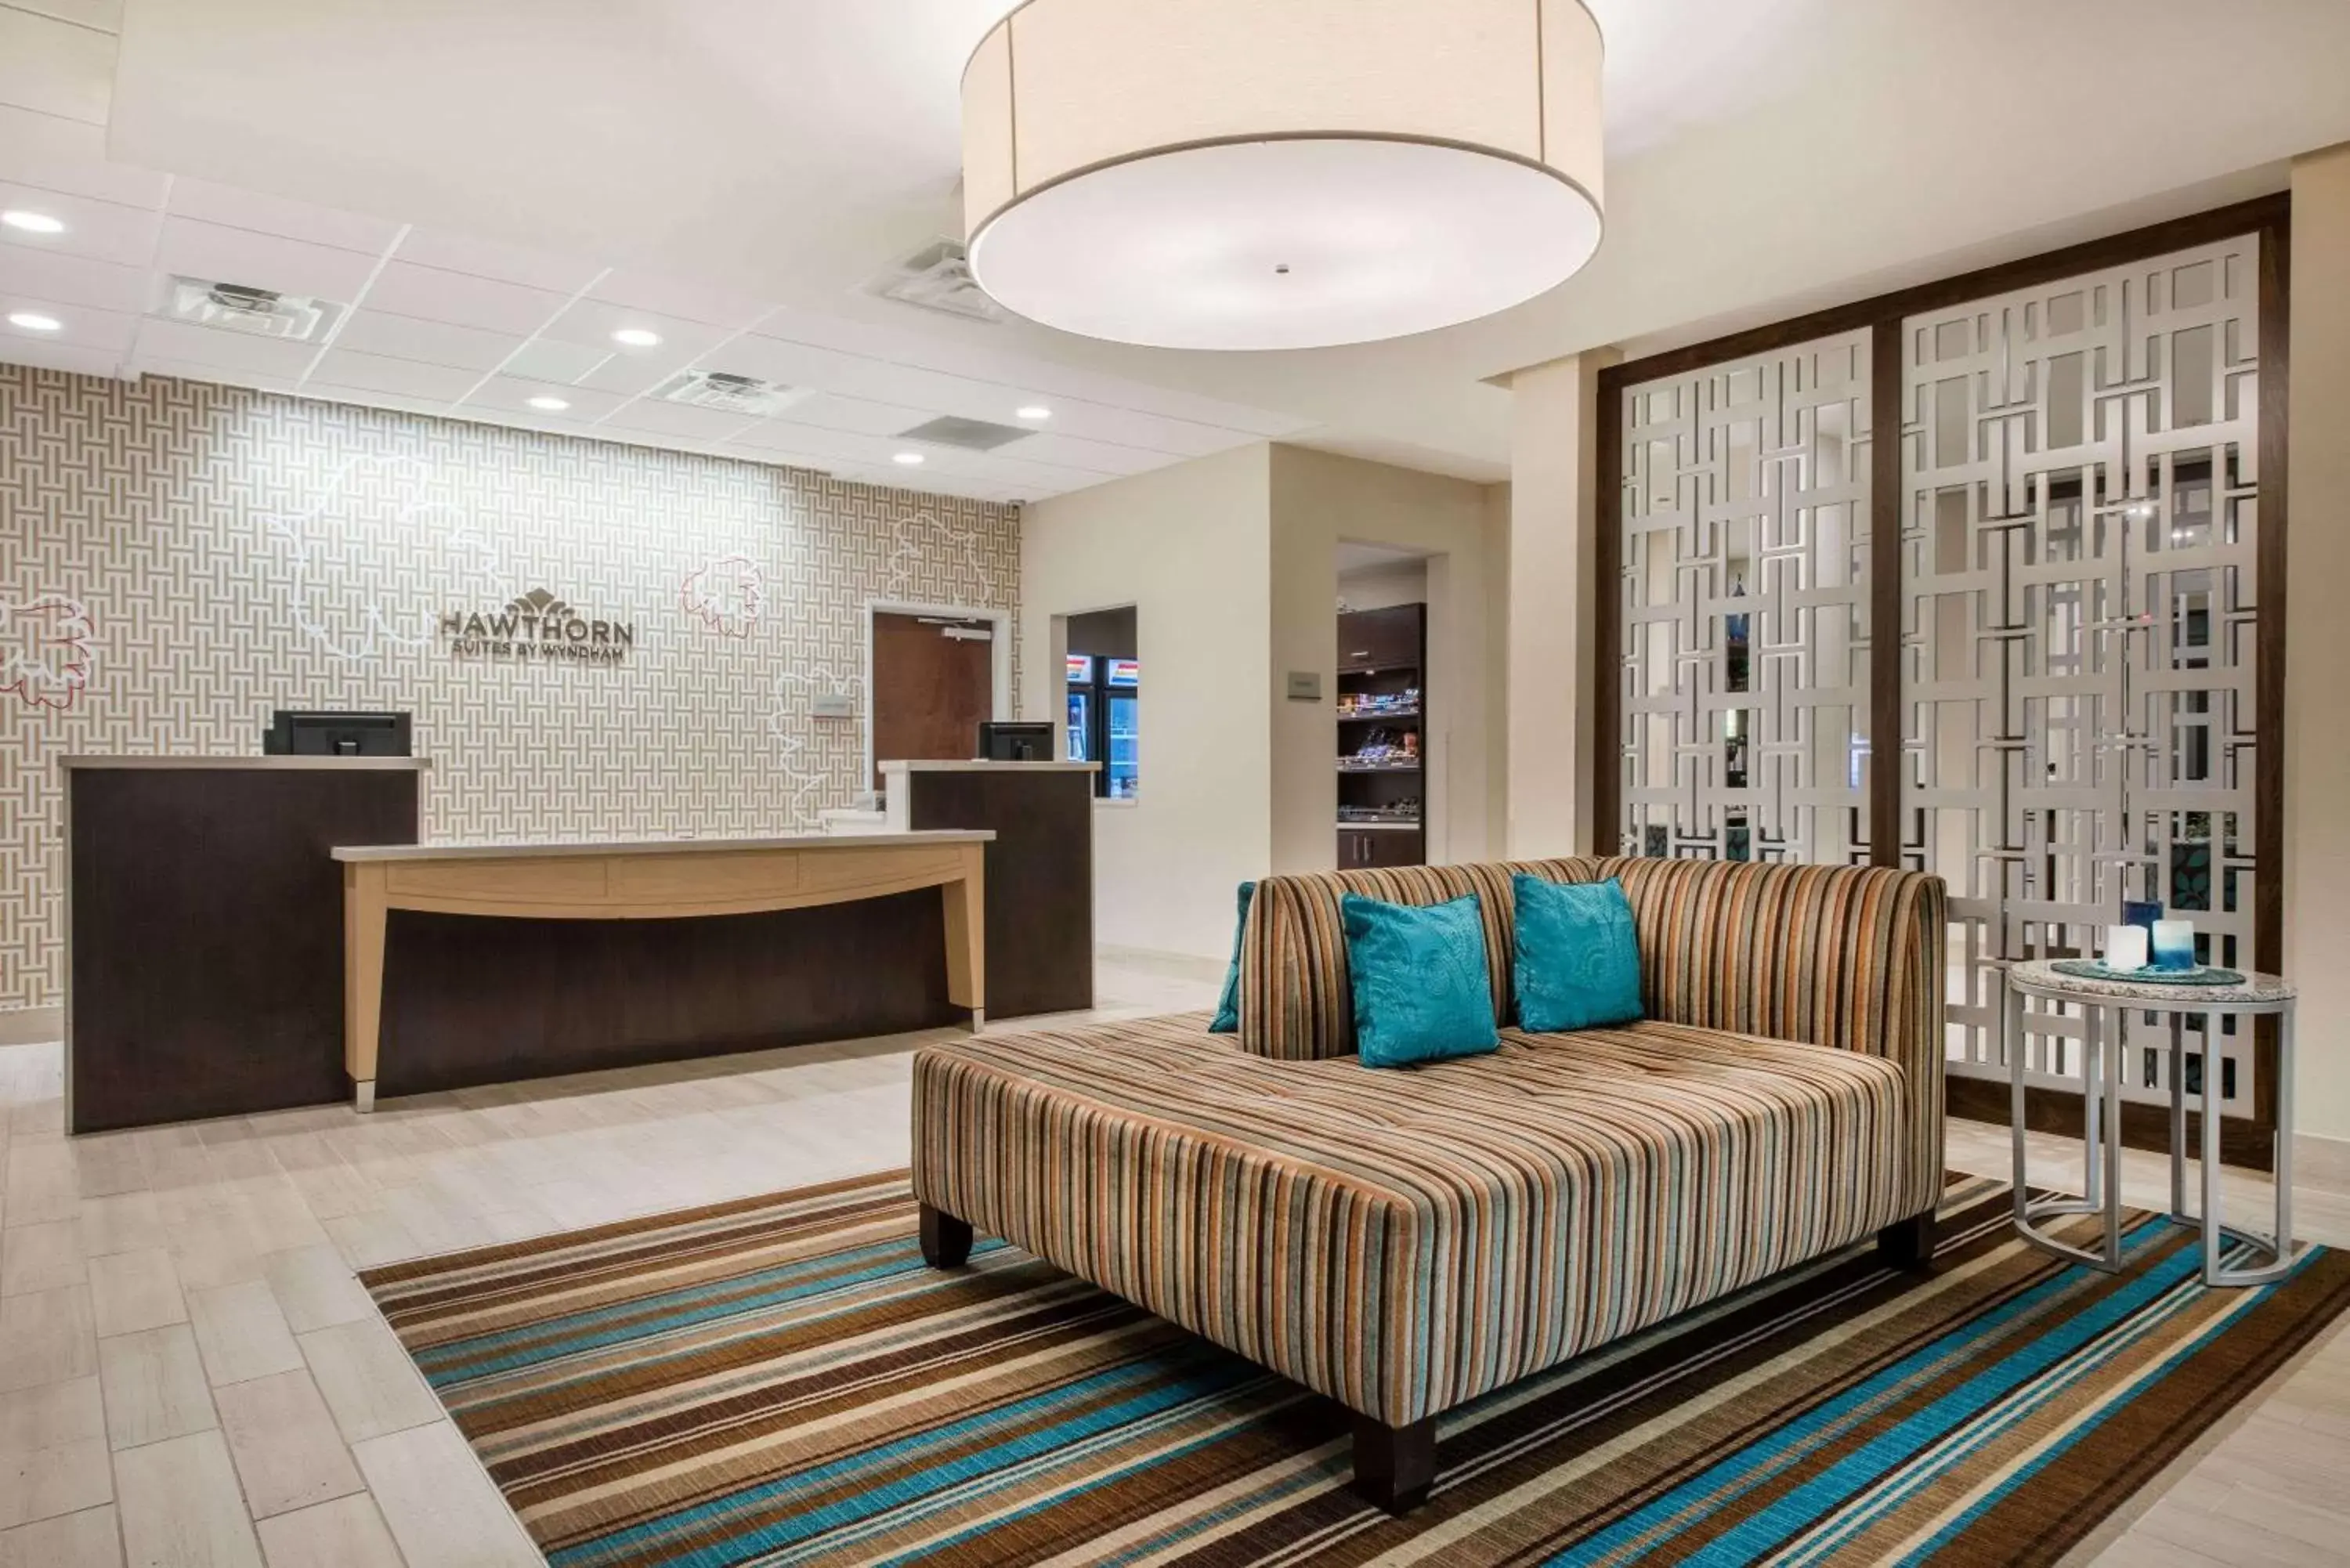 Lobby or reception, Lobby/Reception in Hawthorn Suites by Wyndham Bridgeport